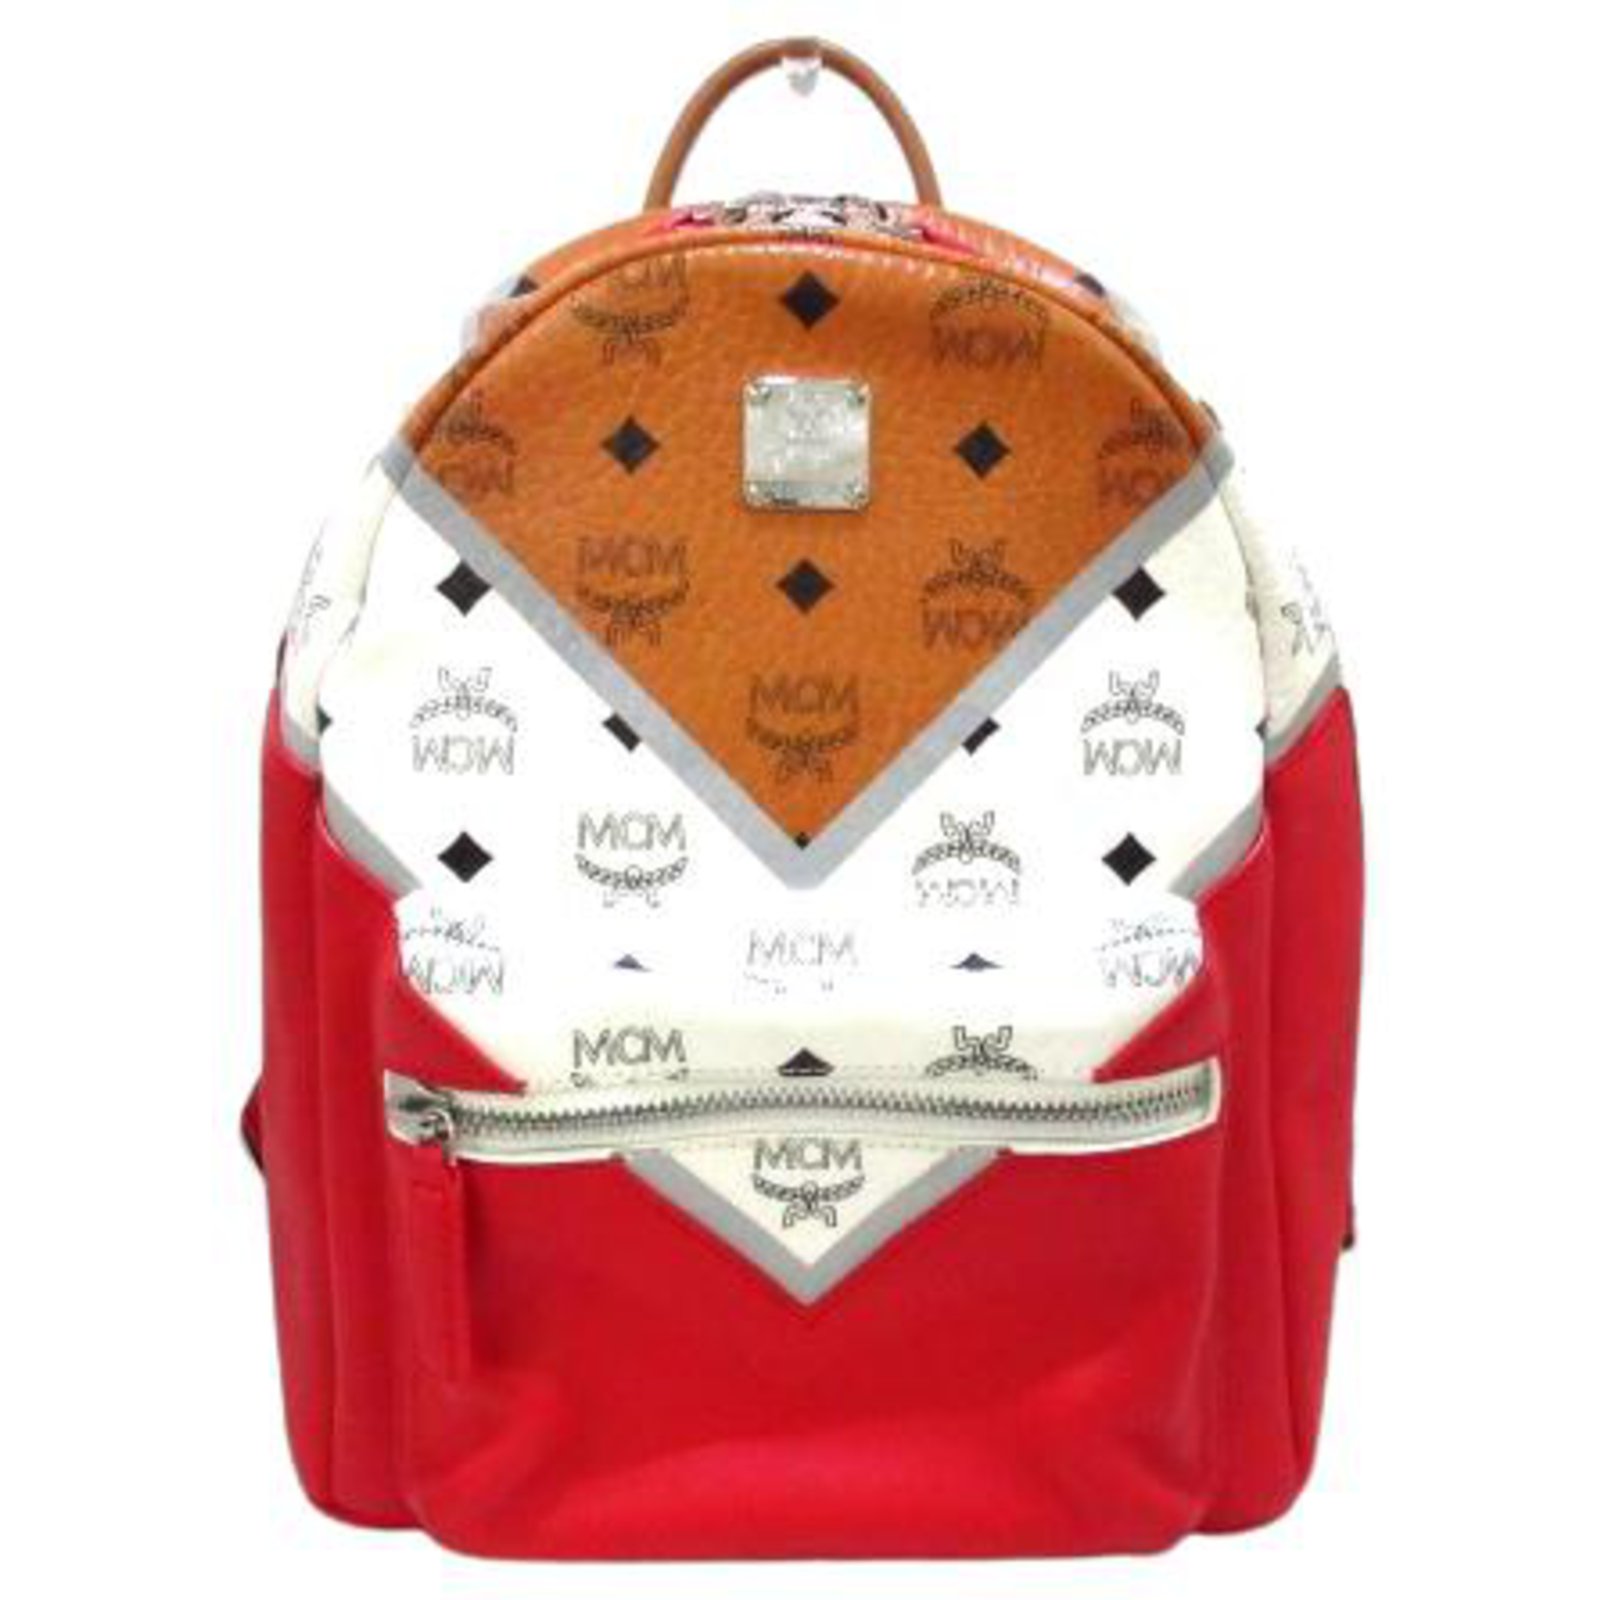 Mcm Backpack All Colors Top Sellers | website.jkuat.ac.ke